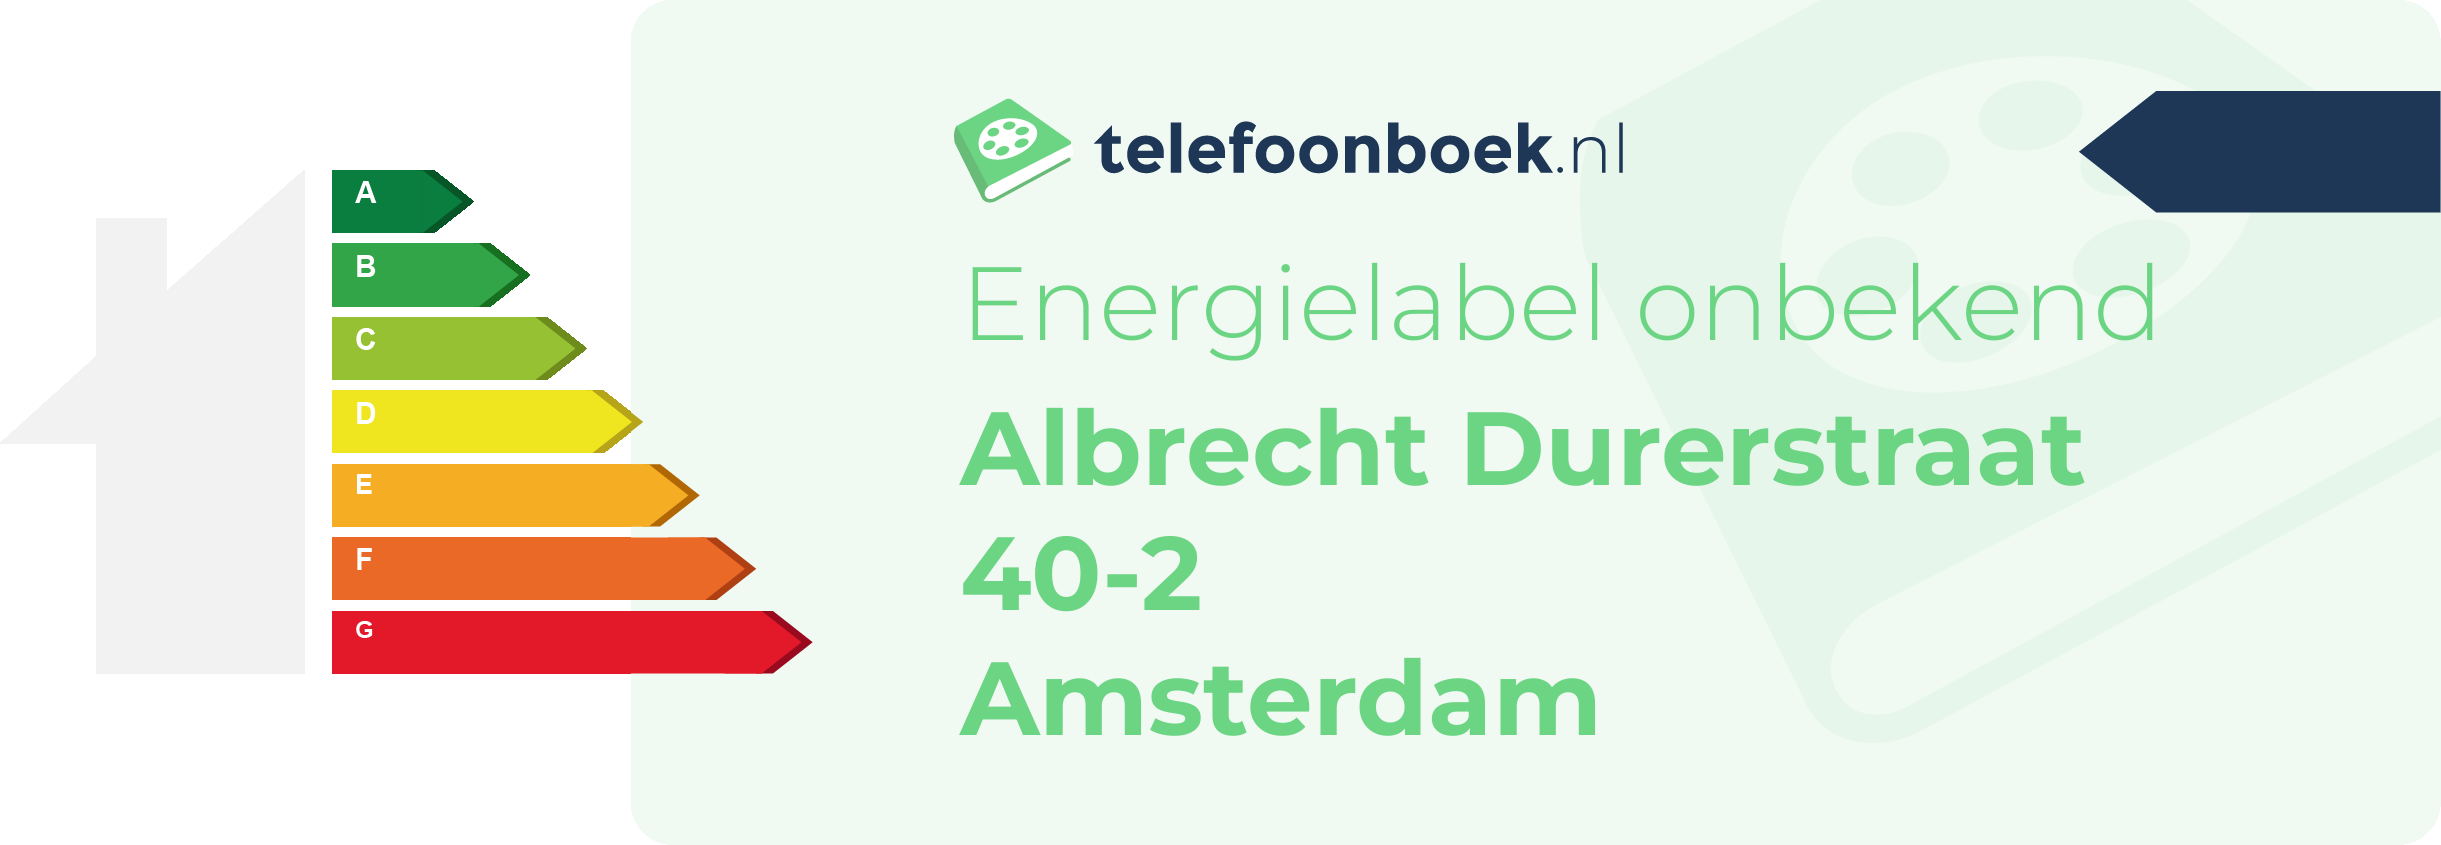 Energielabel Albrecht Durerstraat 40-2 Amsterdam